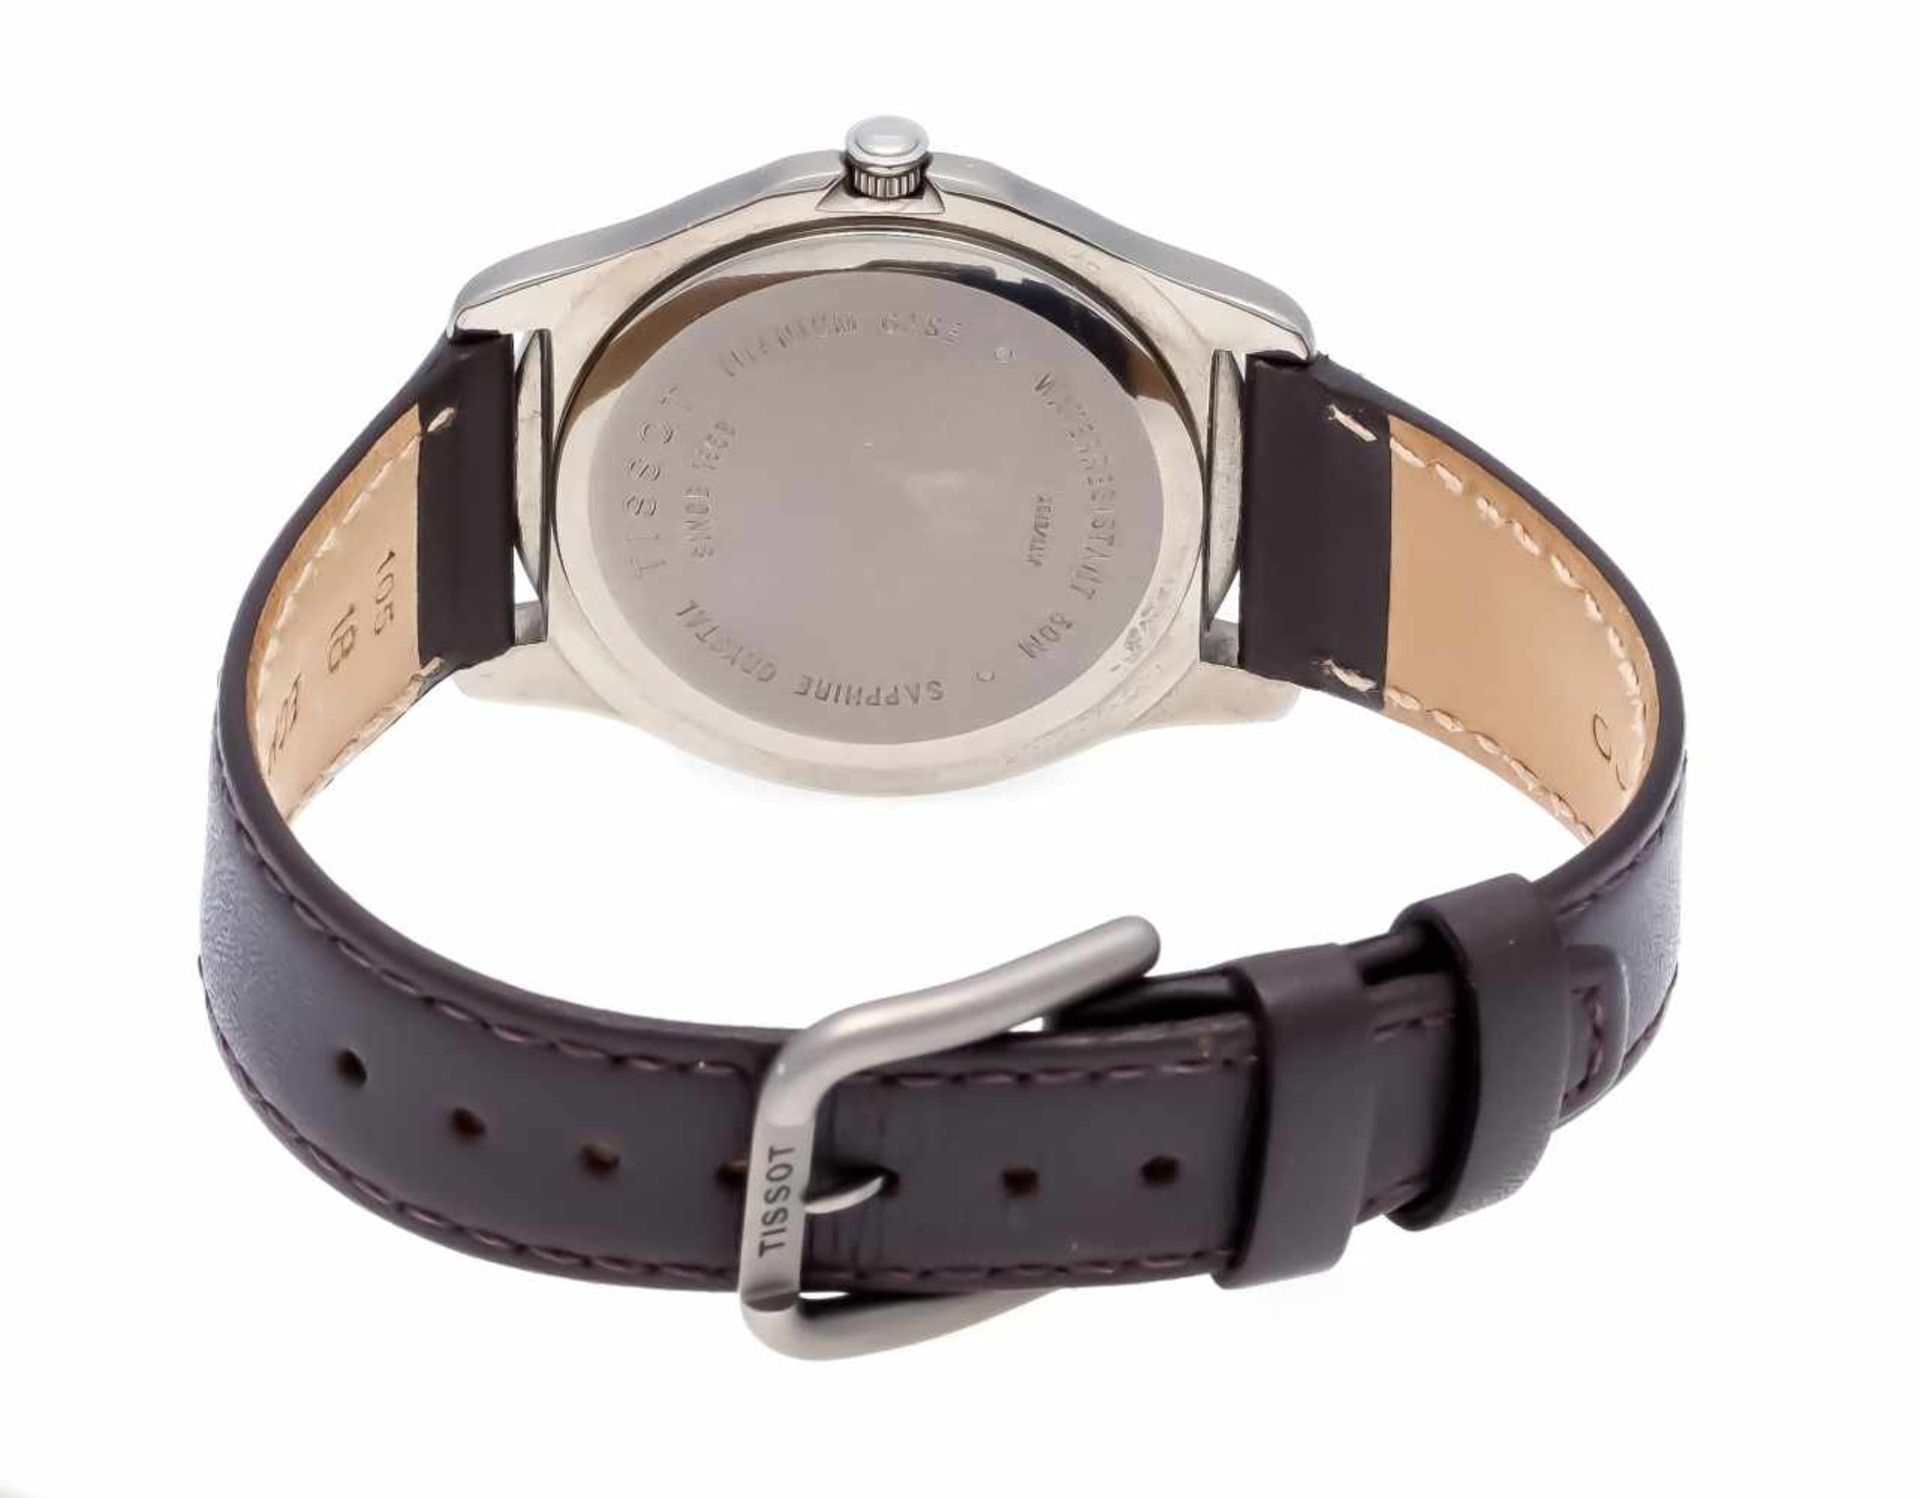 Men's quartz watch Tissot PR50 Titan Lbd. silver-colored Dial with chromed indexes, - Bild 2 aus 2